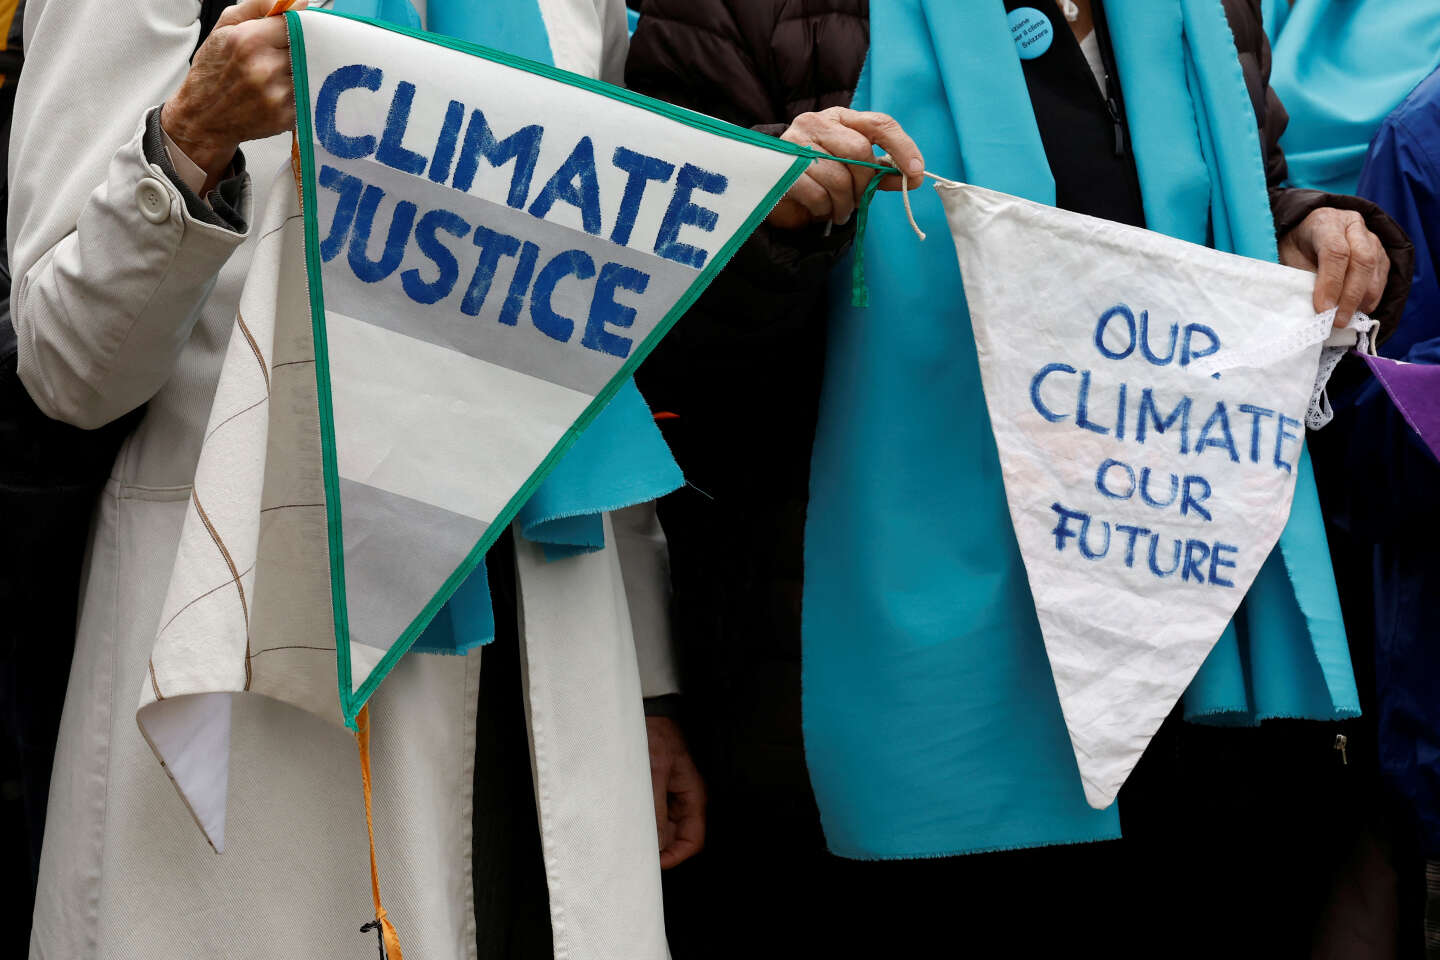 Inaction climatique : la Suisse condamnée par la Cour européenne des droits de l’homme, une première pour un Etat